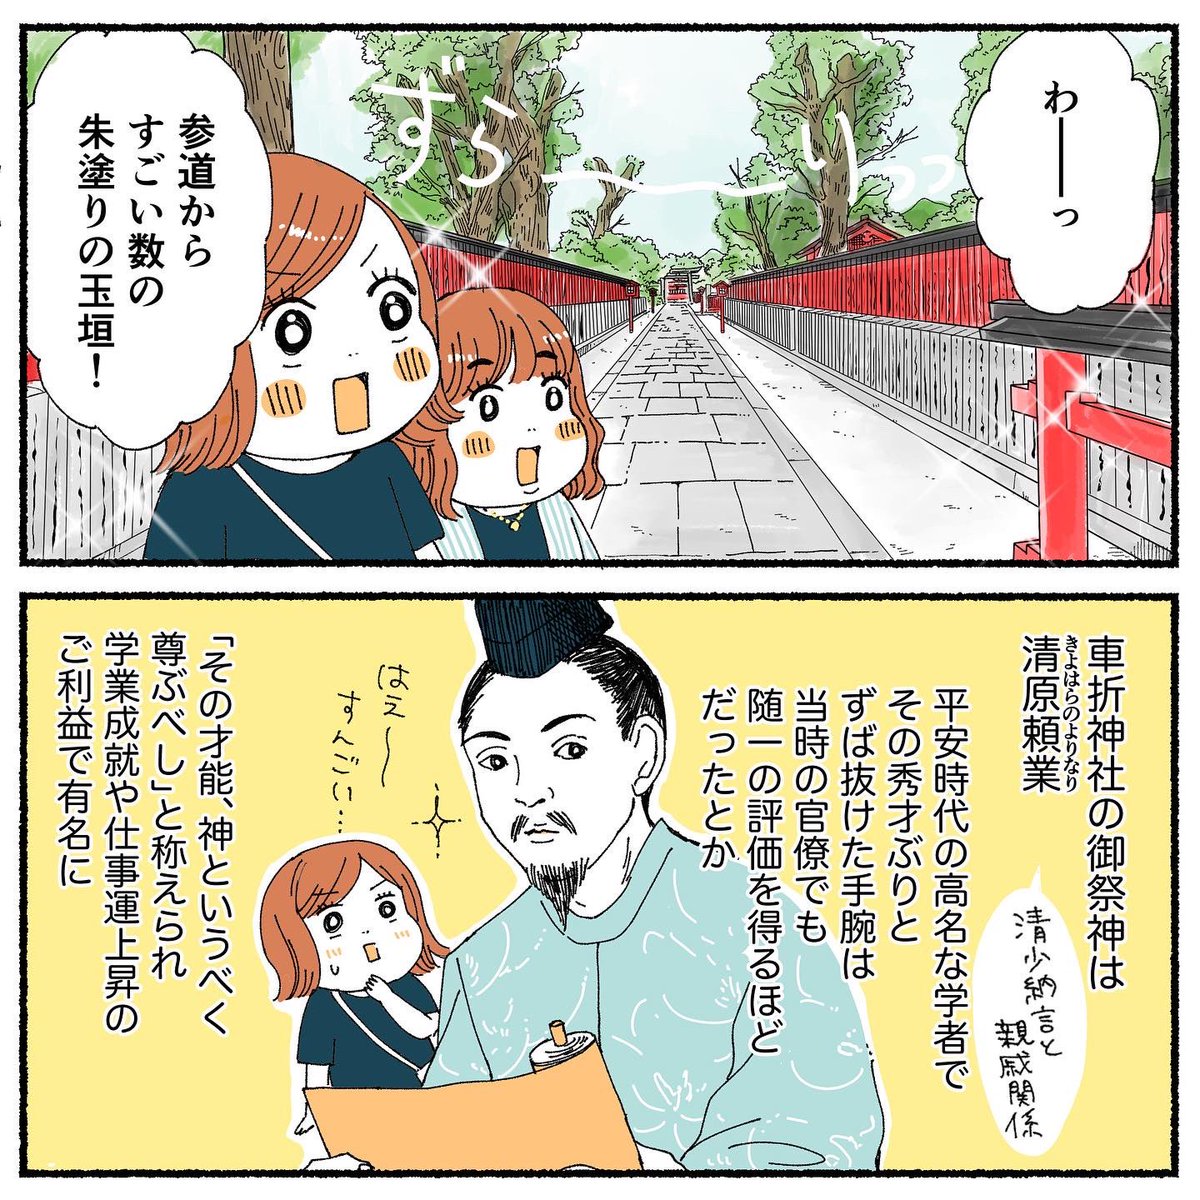 京都旅行レポ漫画②
〜車折神社&嵐山渡月橋〜
1/2 